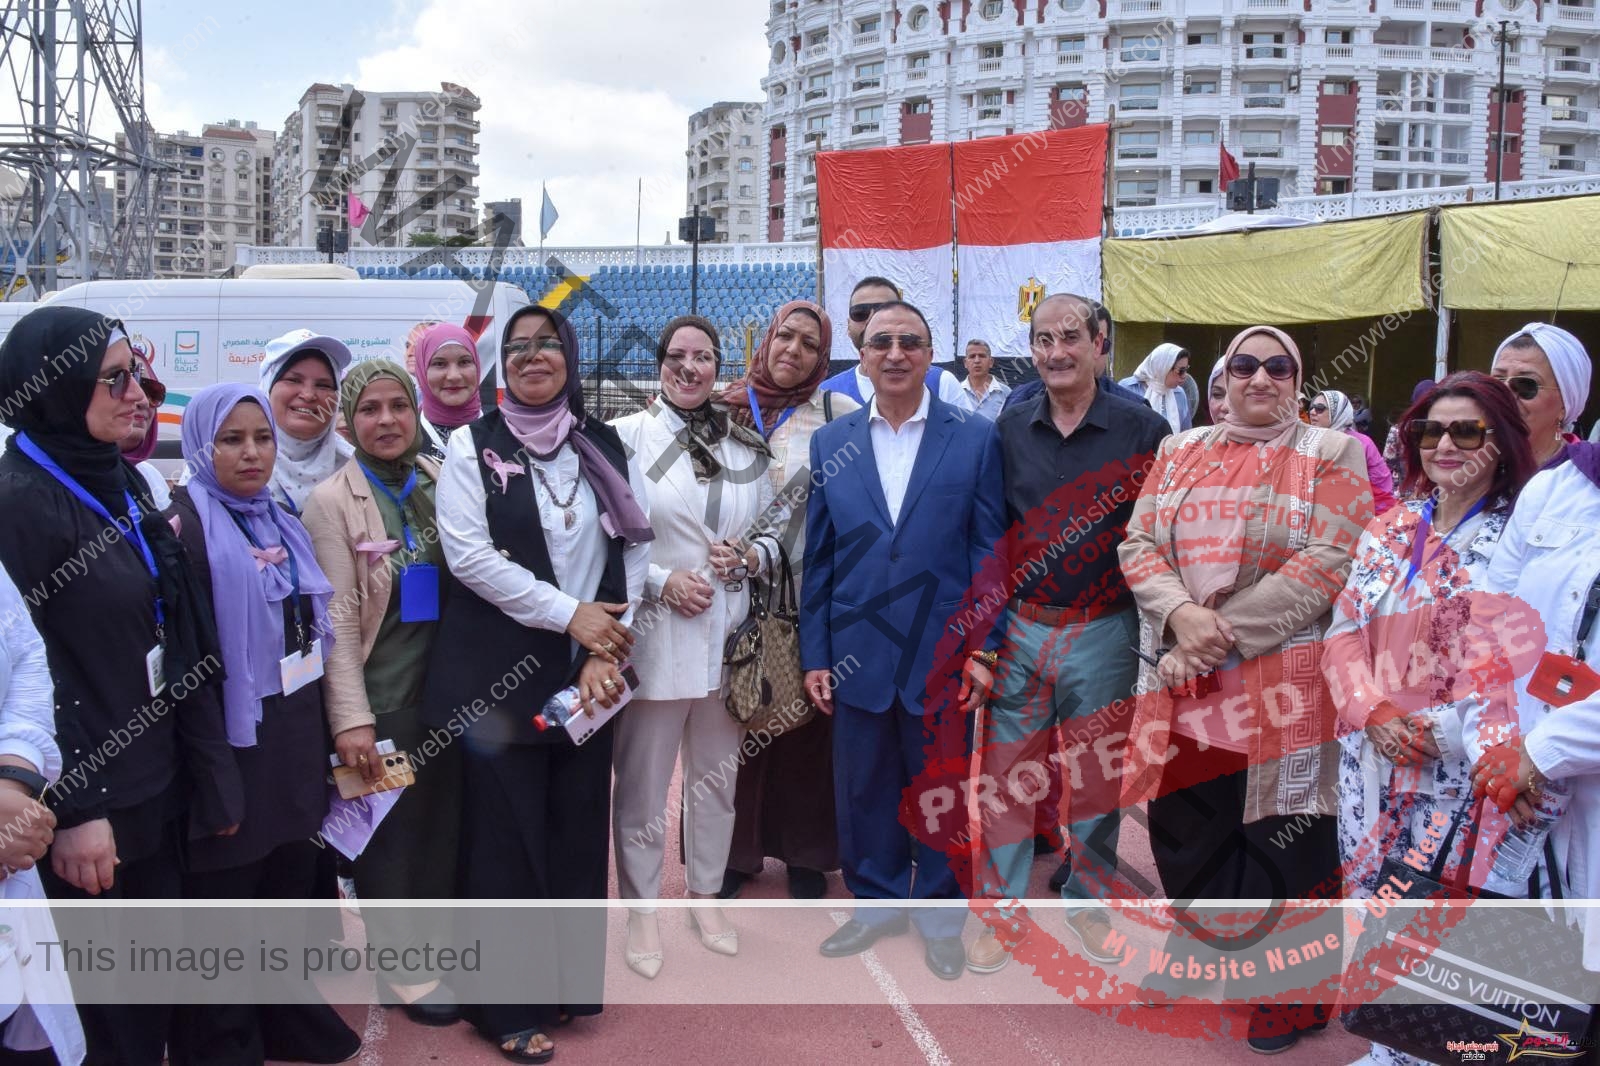 محافظ الإسكندرية يطلق حملة "من بدري أمان" للكشف المبكر وعلاج الأورام السرطانية المختلفة